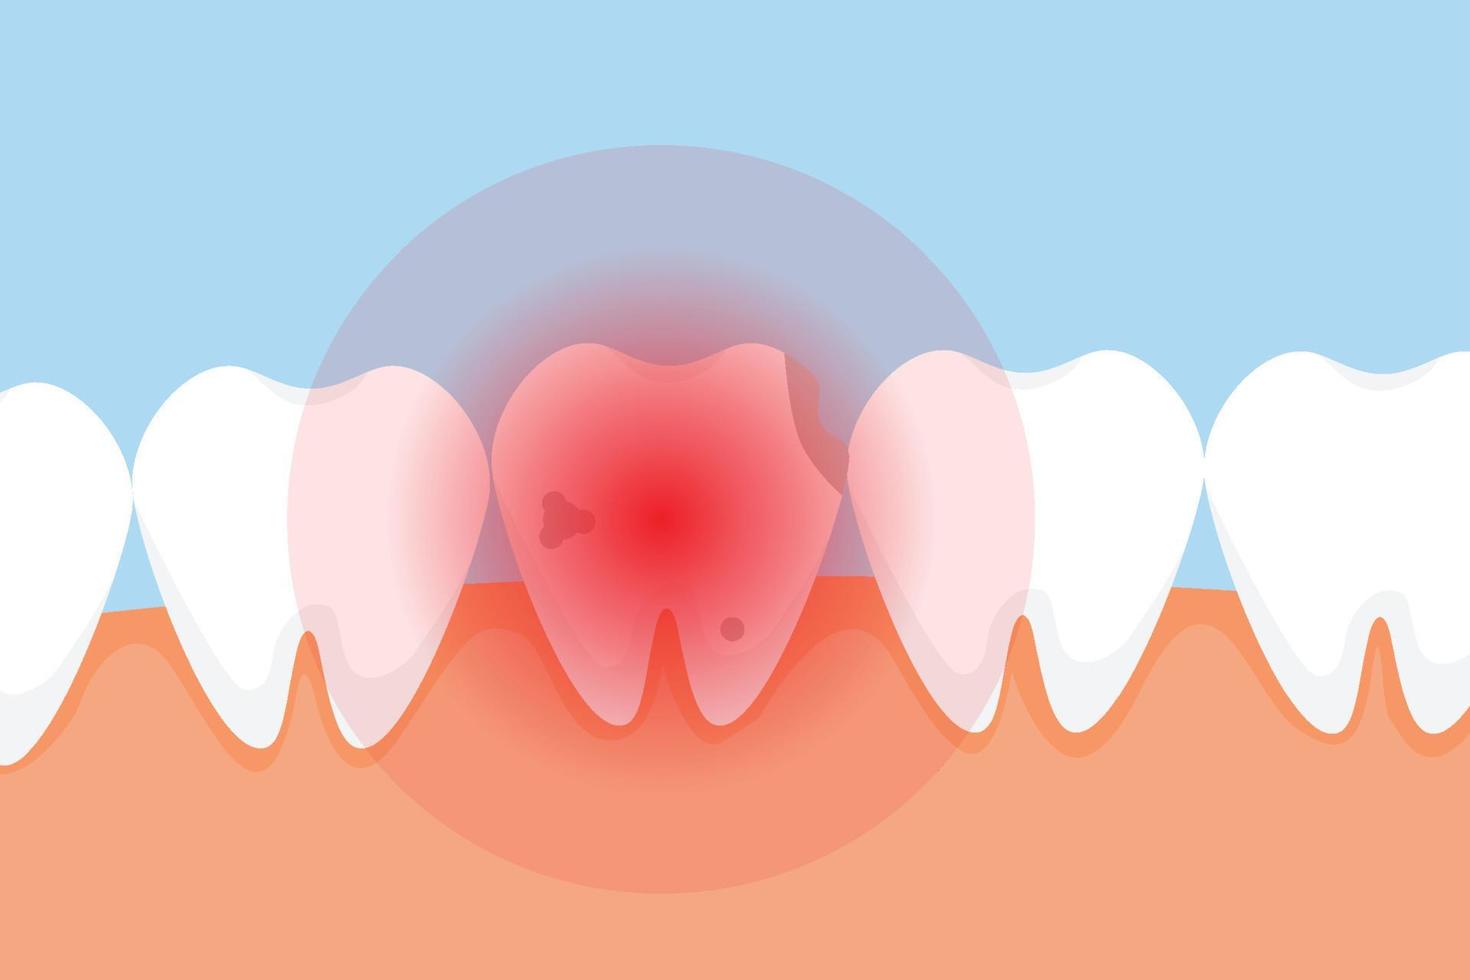 död tand gör ont och ger en röd smärtsignal koncept. en dålig tand med hål och en röd farosignal. dental infographic element vektor med en död tand. stomatologisk vård för tänder.